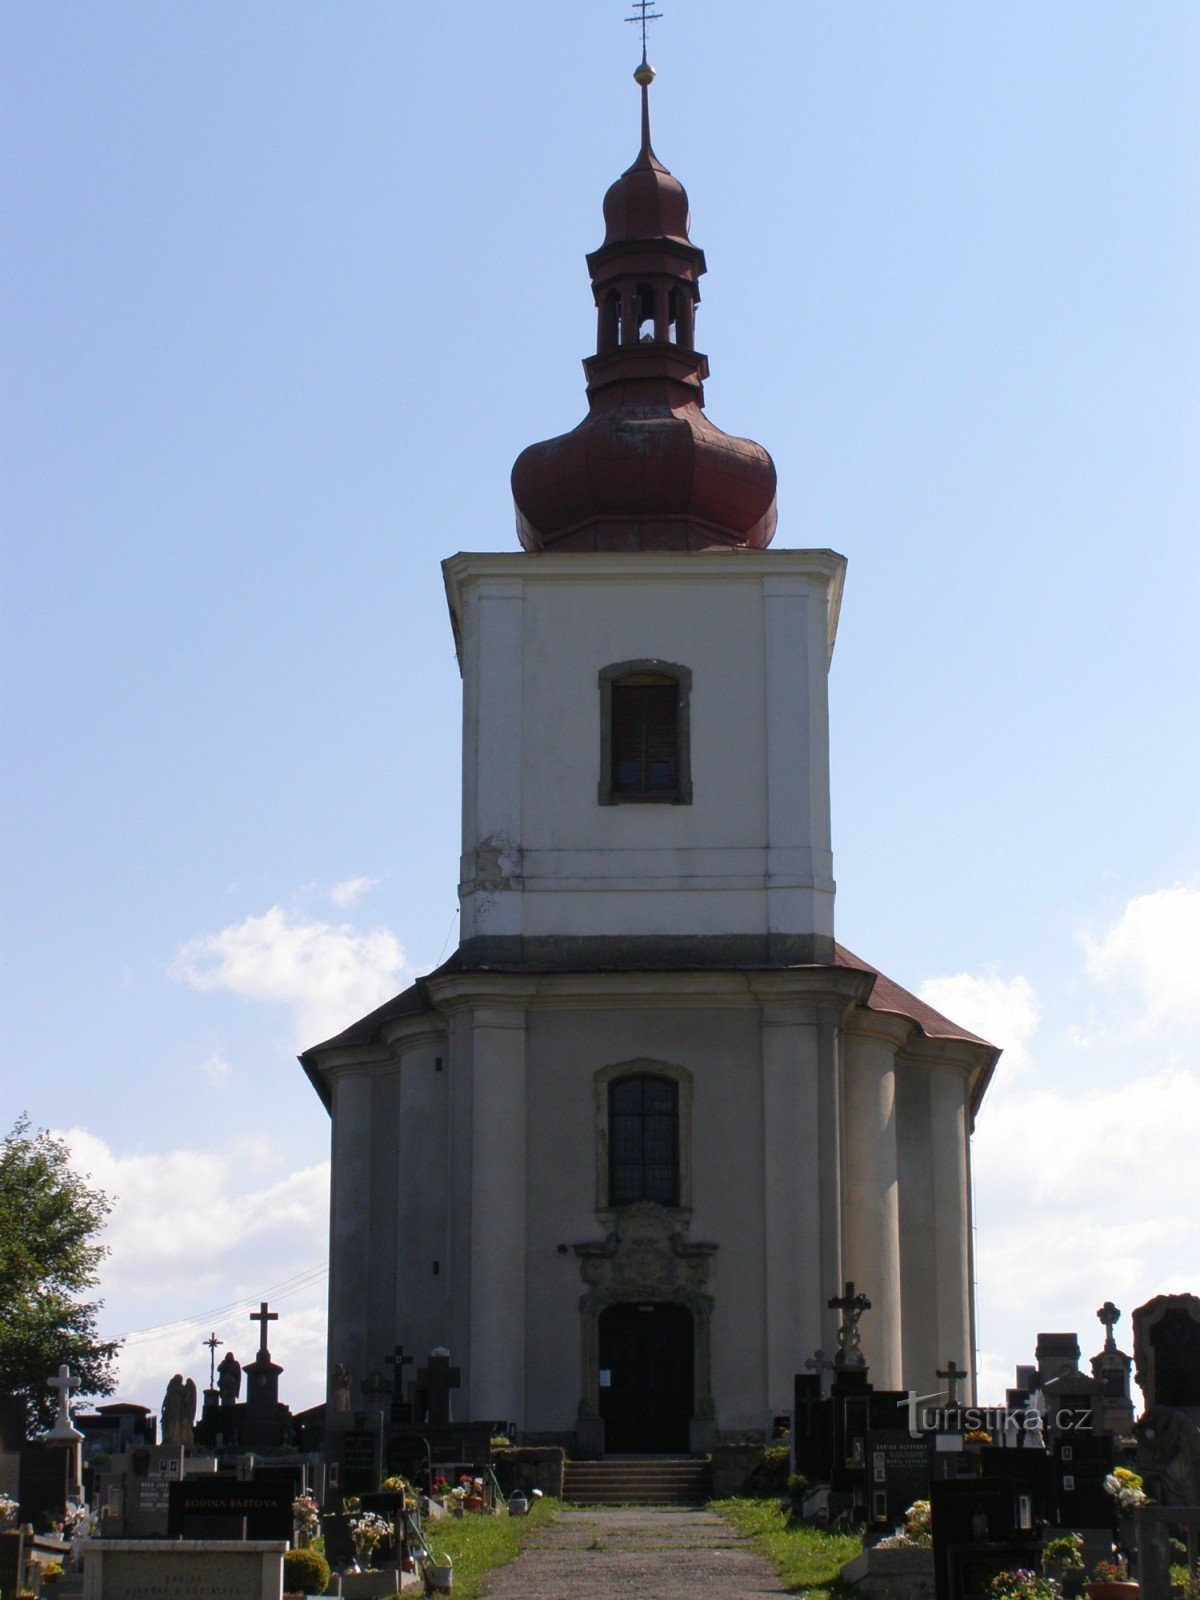 Javornice - biserica Sf. George